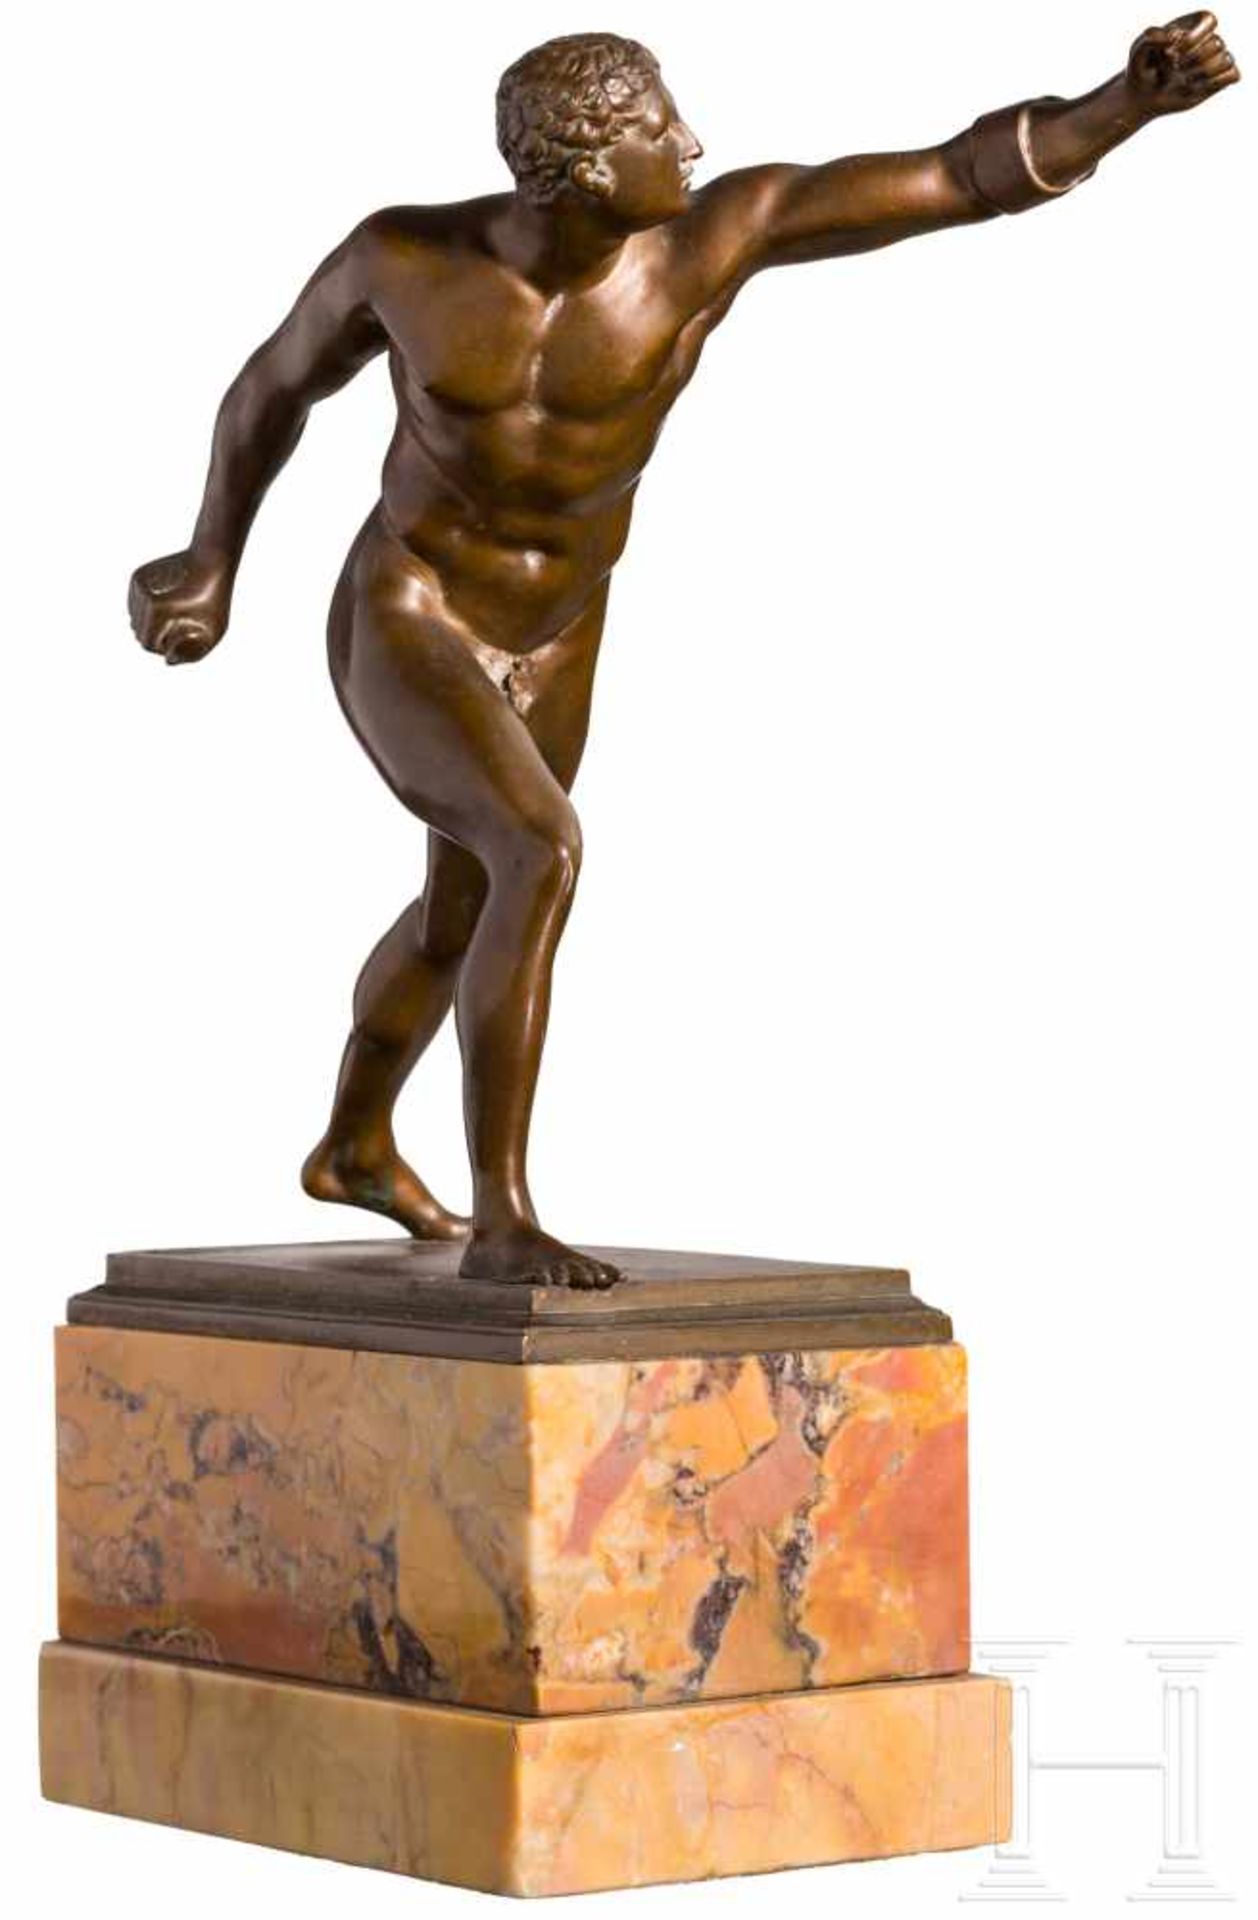 "Borghesischer Fechter"Dunkel patinierte Bronze (?) nach dem griechischen Bildhauer Agasias aus